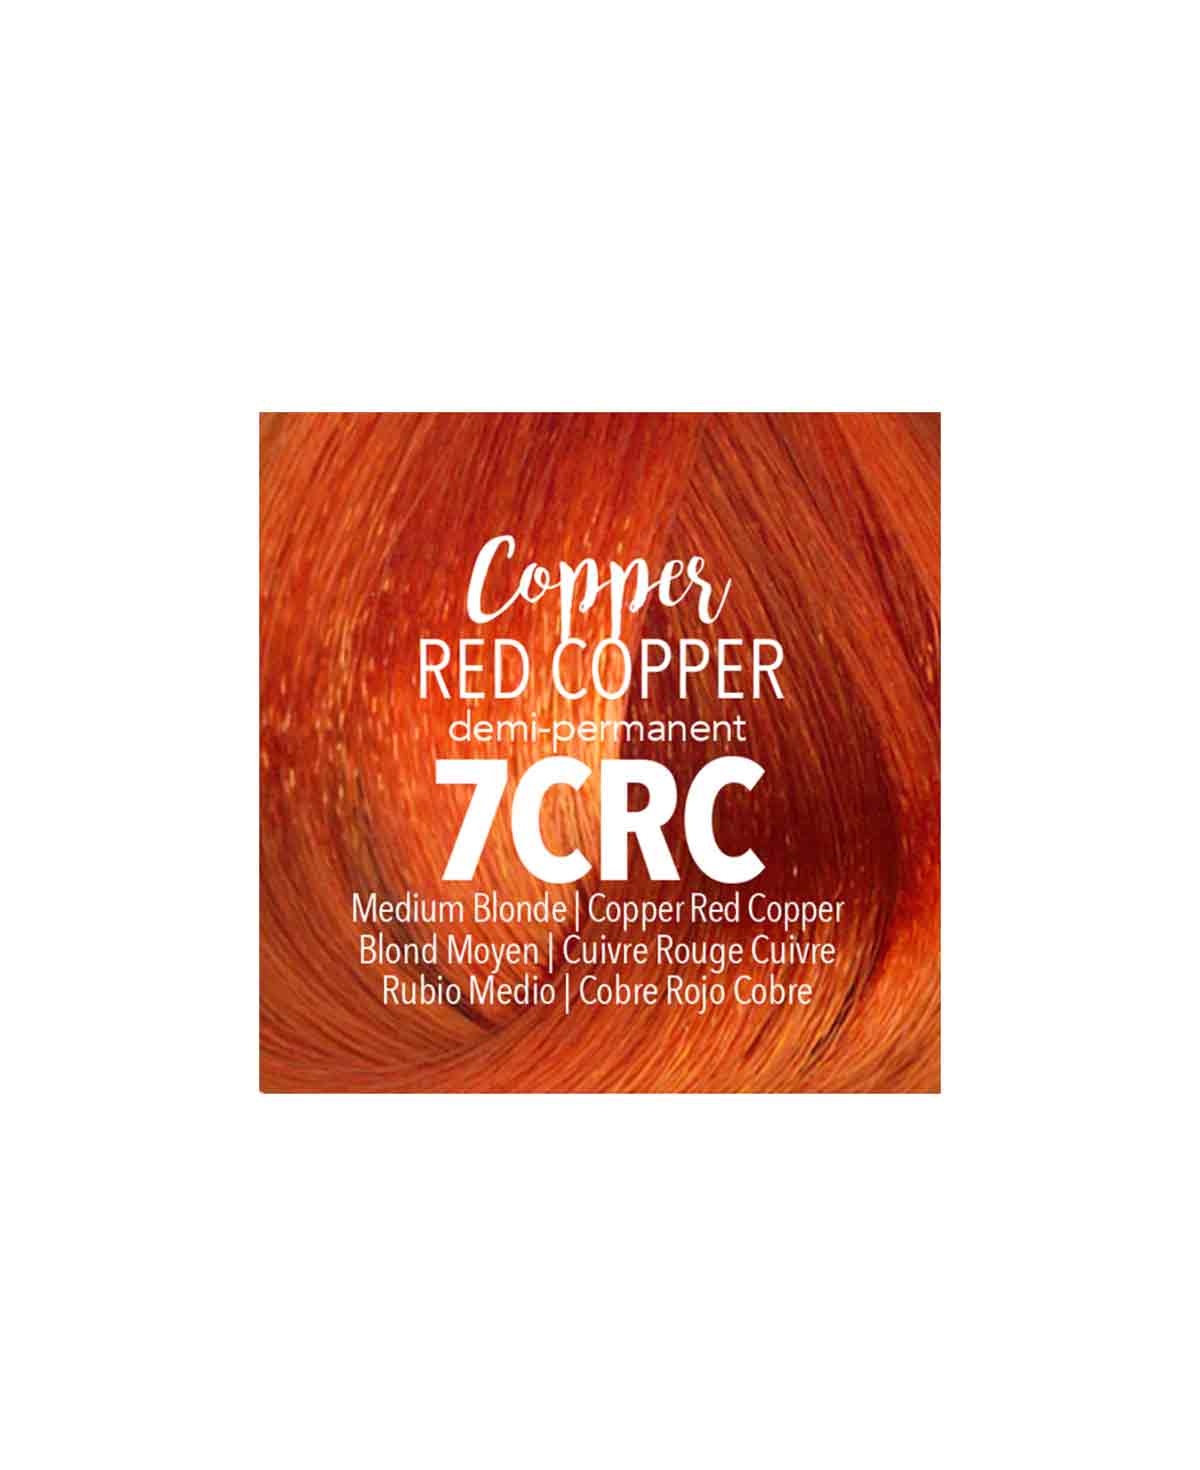 Mydentity - 7CRC Medium Blonde Copper Red Copper Demi-P